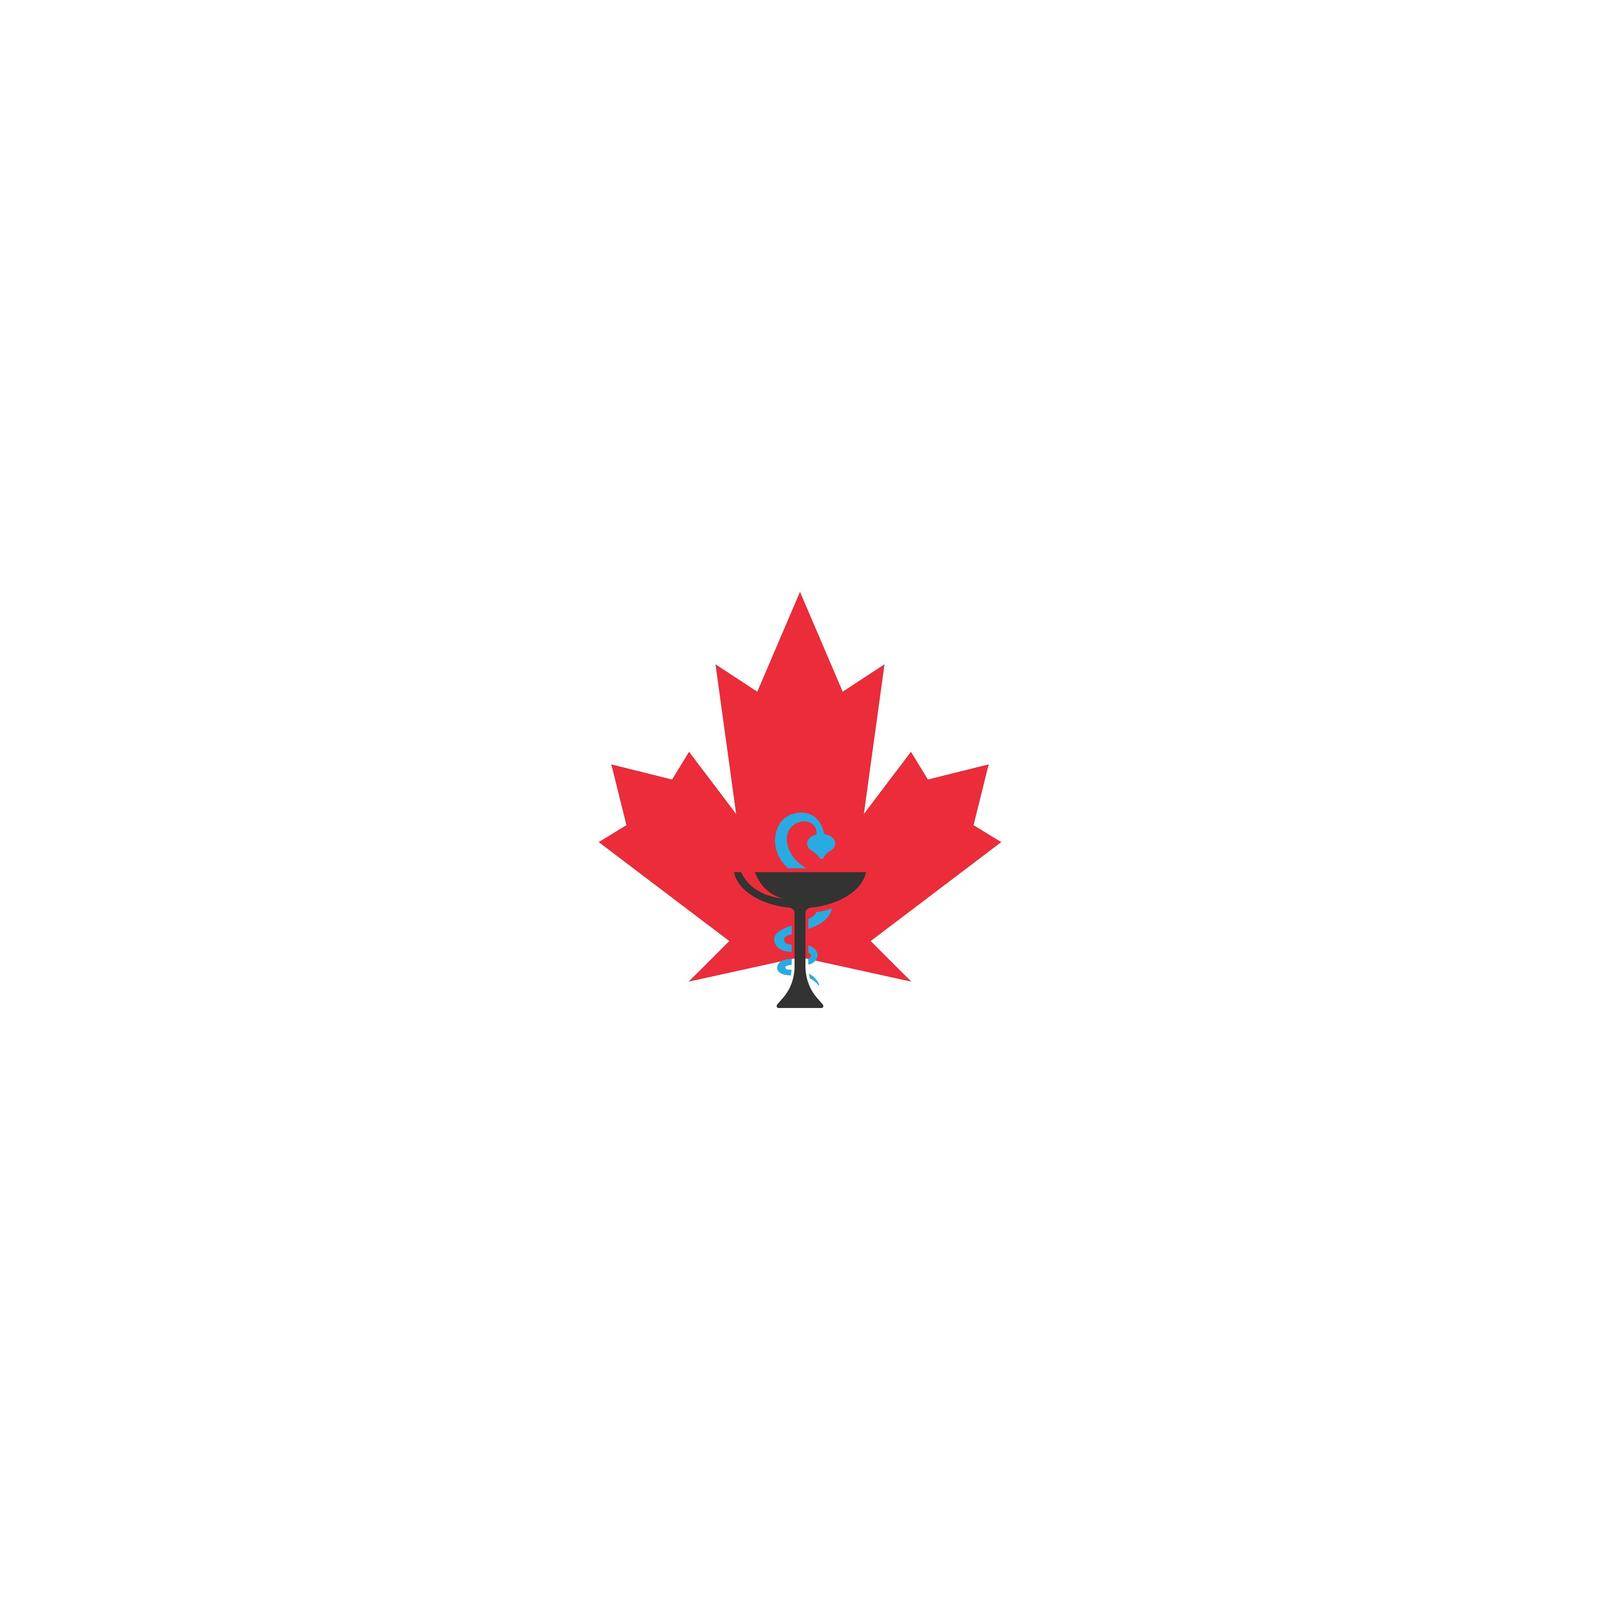 Maple leaf medical pharmacy logo icon illustration